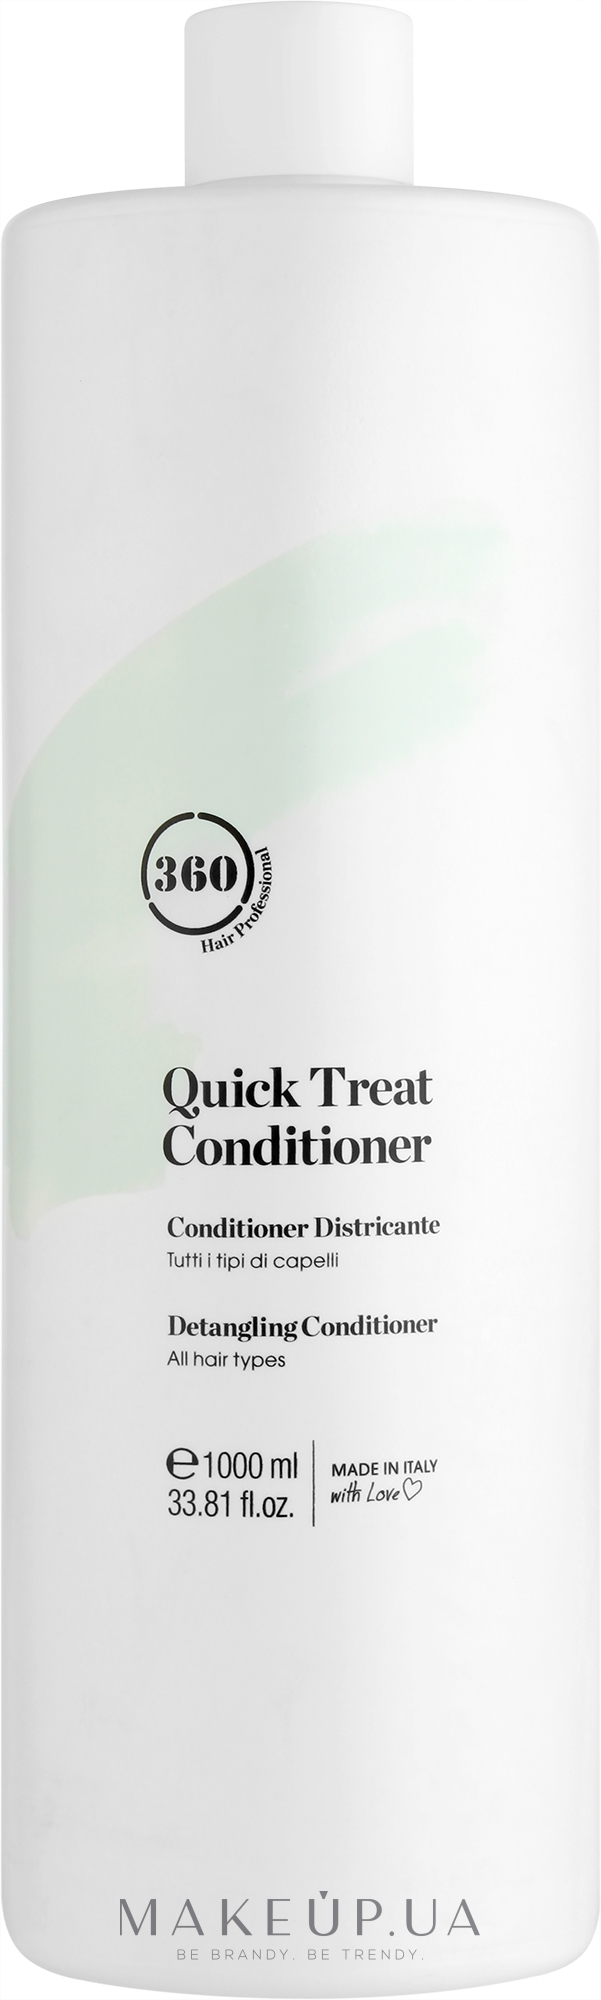 Кондиціонер миттєвої дії для розплутування всіх типів волосся - 360 Be Quick Treat Conditioner — фото 1000ml